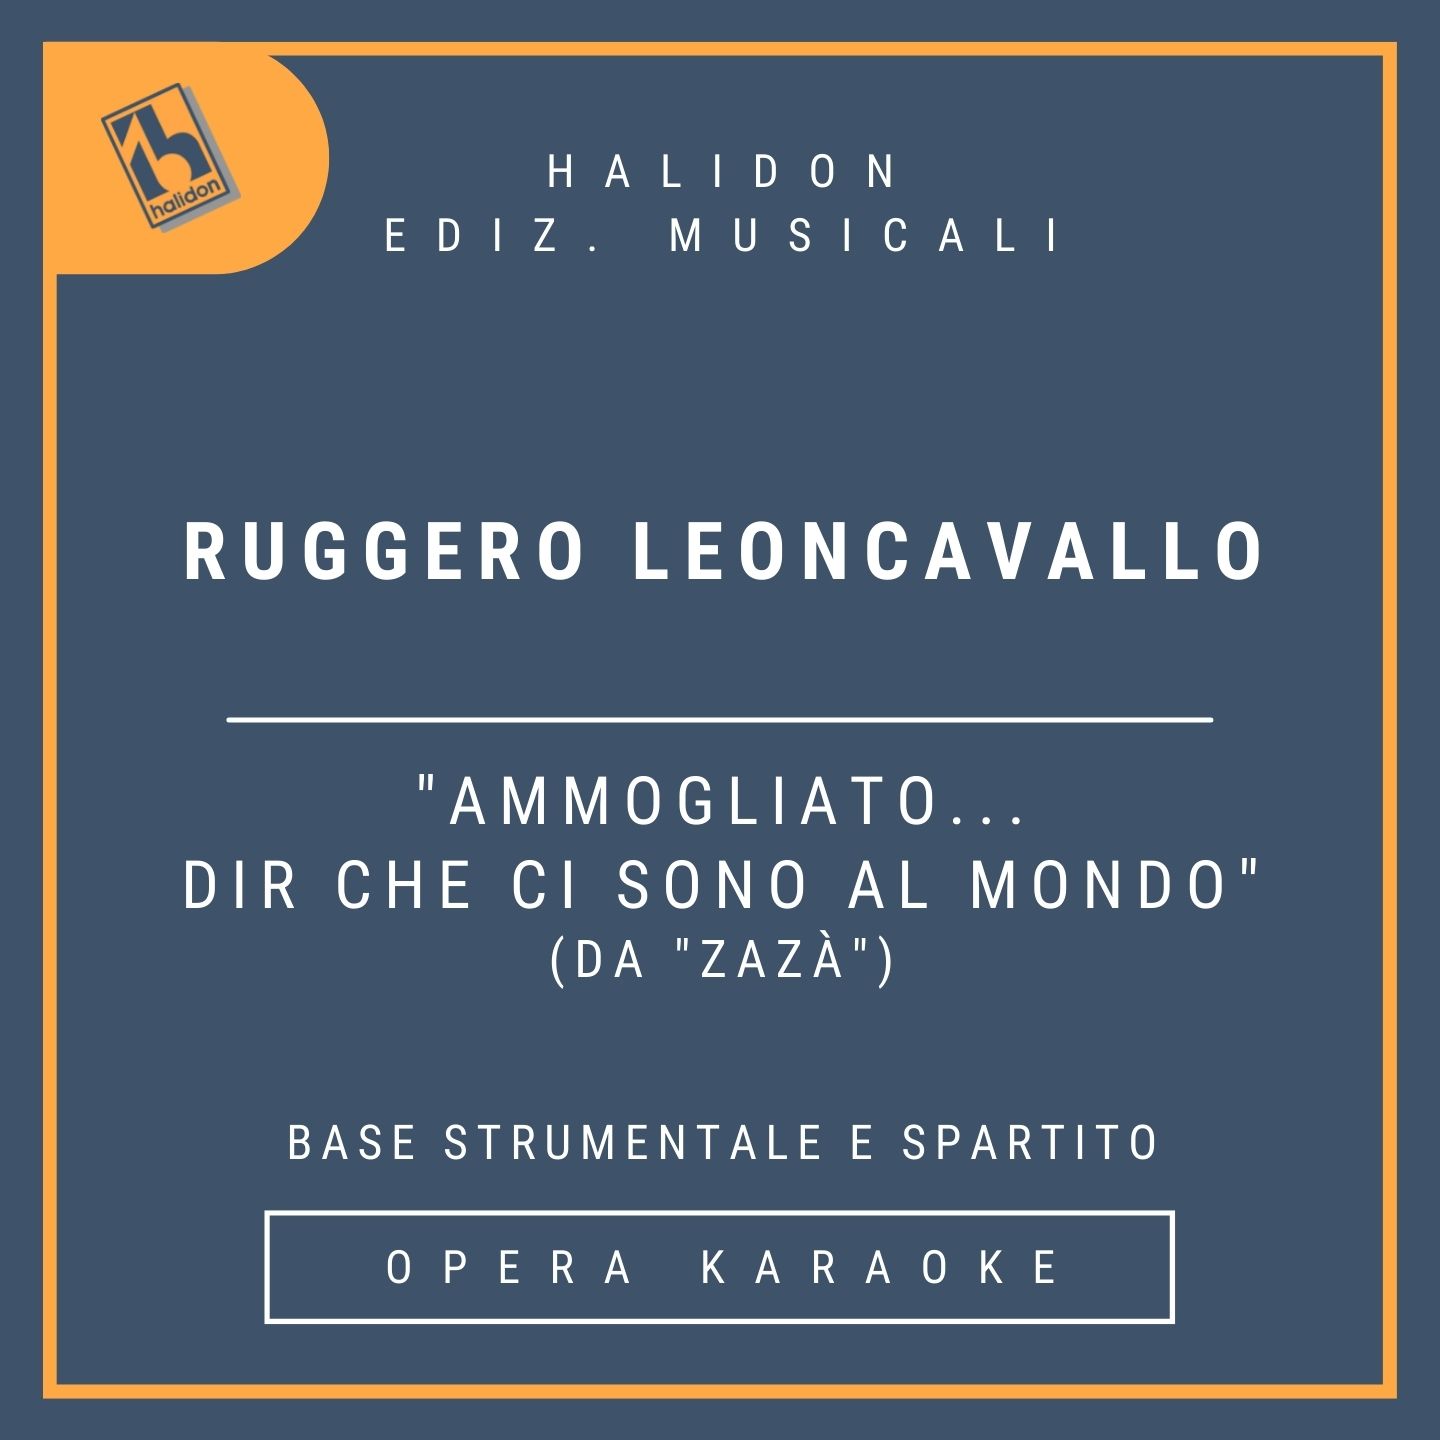 Ruggero Leoncavallo - Ammogliato... Dir che ci sono al mondo (from 'Zazà') - Zazà's Aria (dramatic soprano) - Instrumental track + sheet